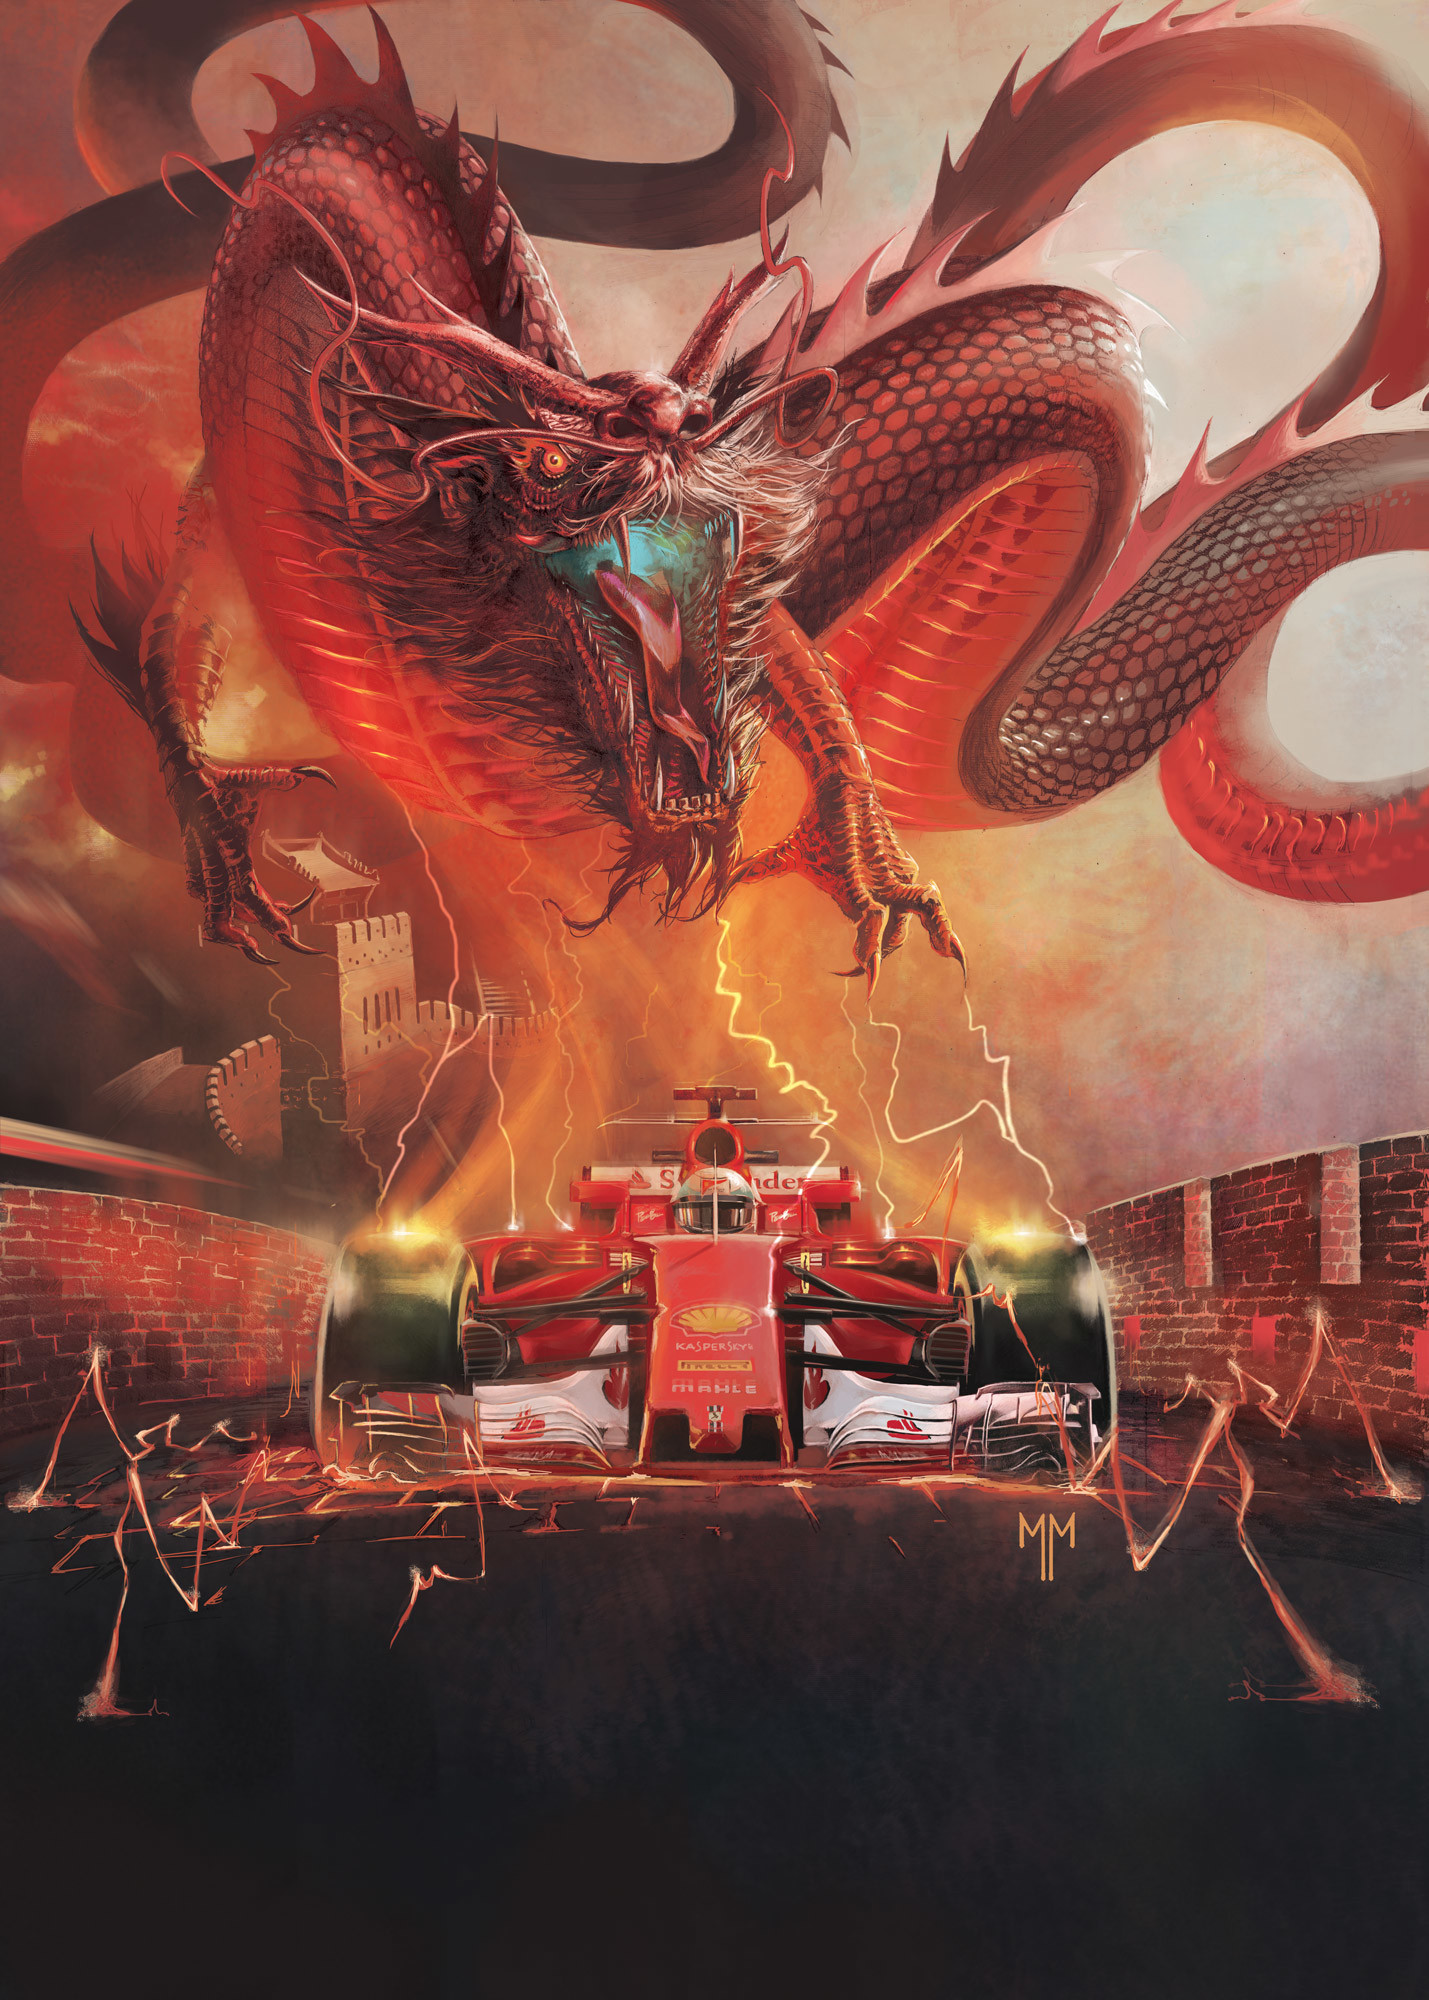 Scuderia Ferrari - Cover Arts 